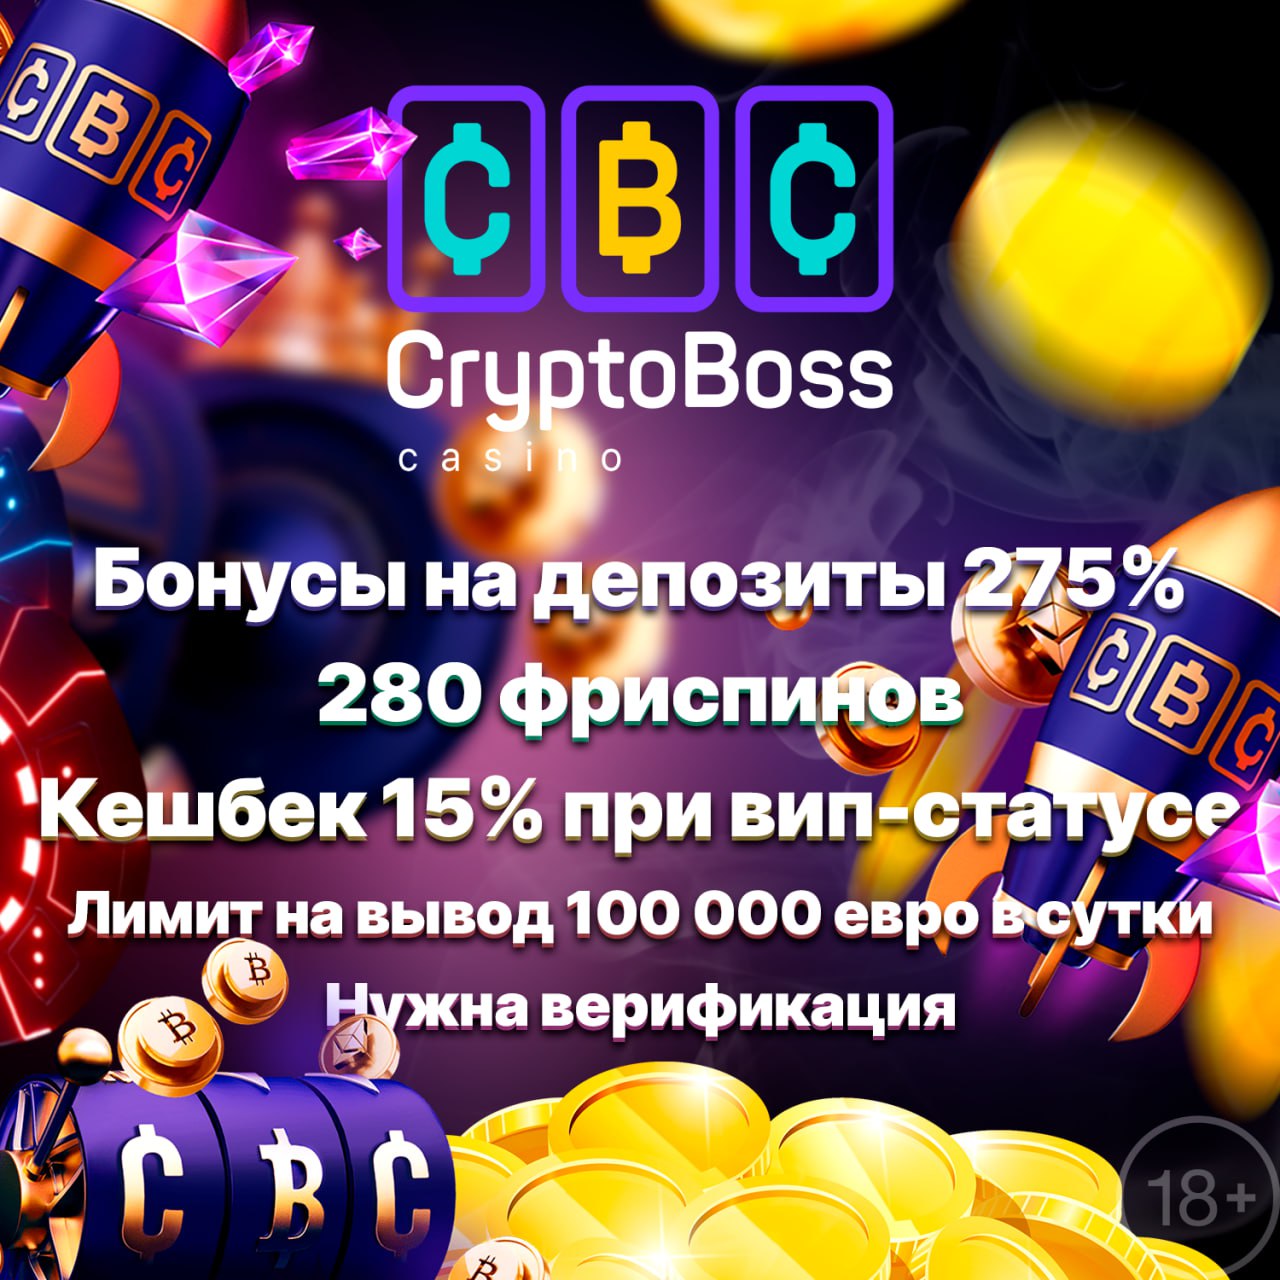 Casino cryptoboss cryptoboss11. Криптобос. CRYPTOBOSS.